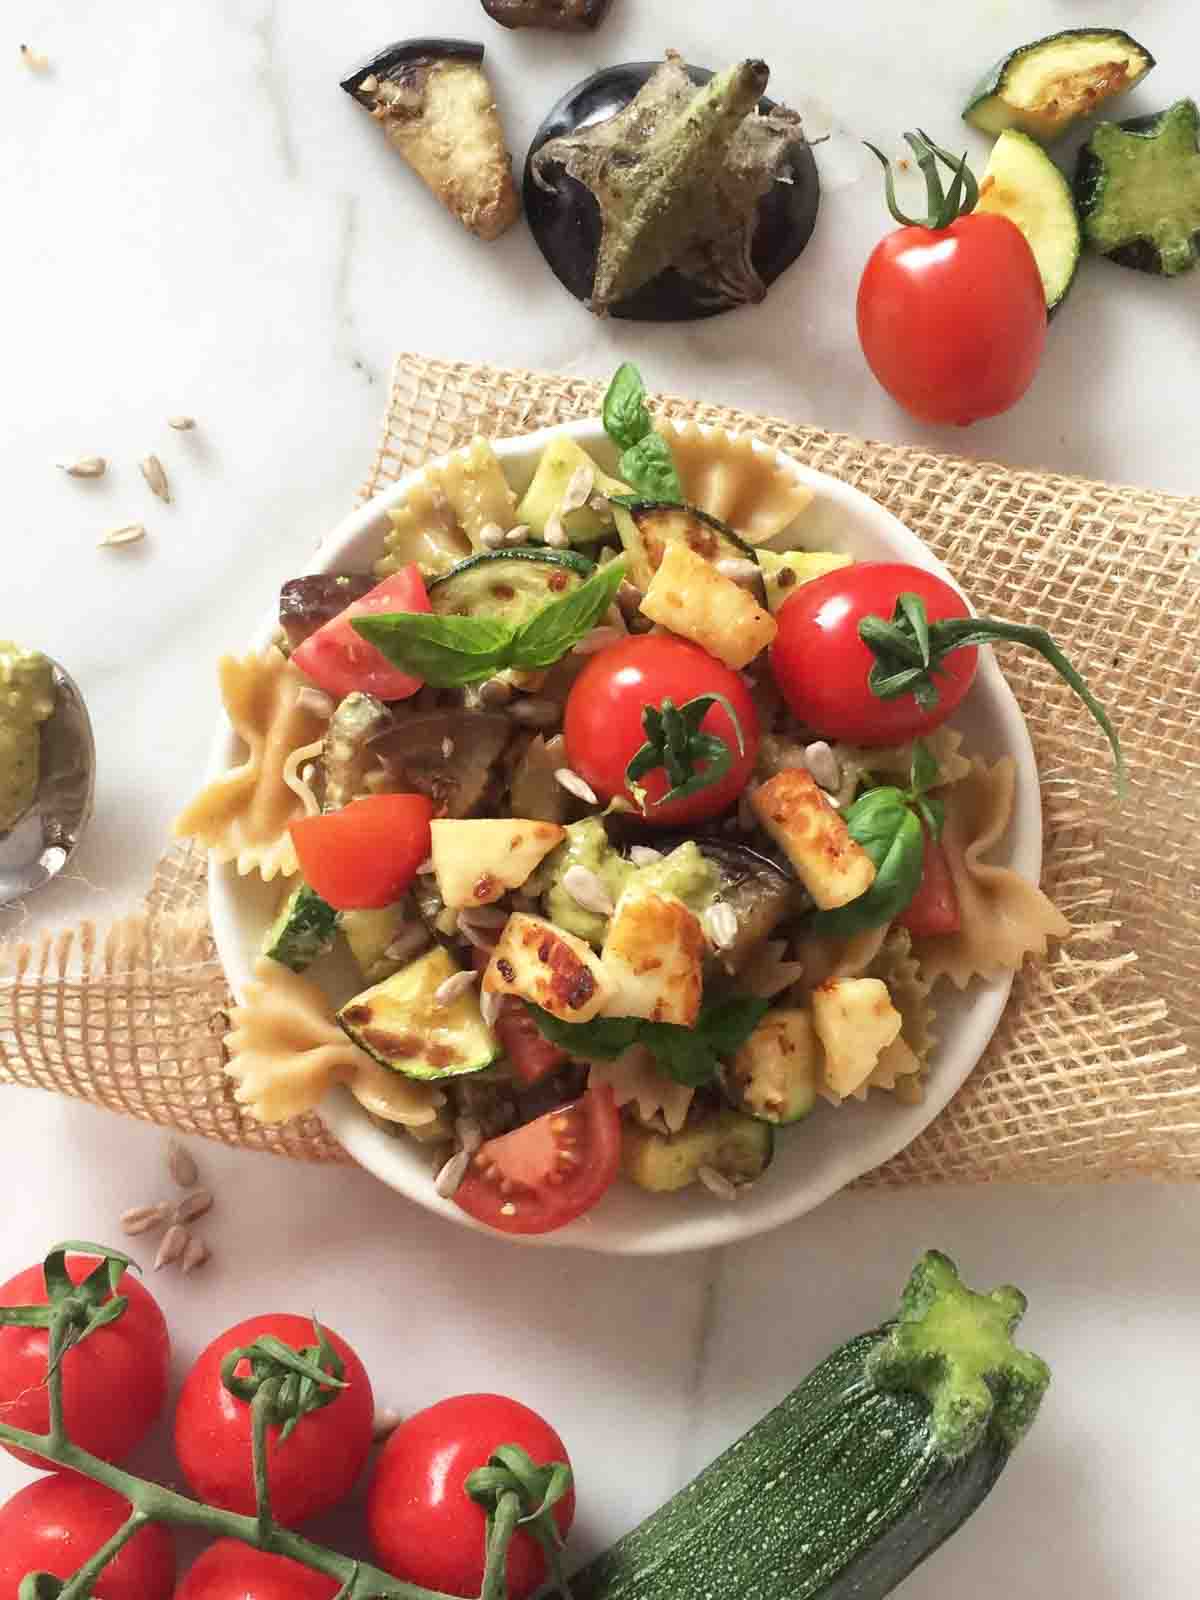 Nudelsalat mit Grillgemüse und grünem Pesto | mediterranean pasta salad with grilled veggies and pesto verde